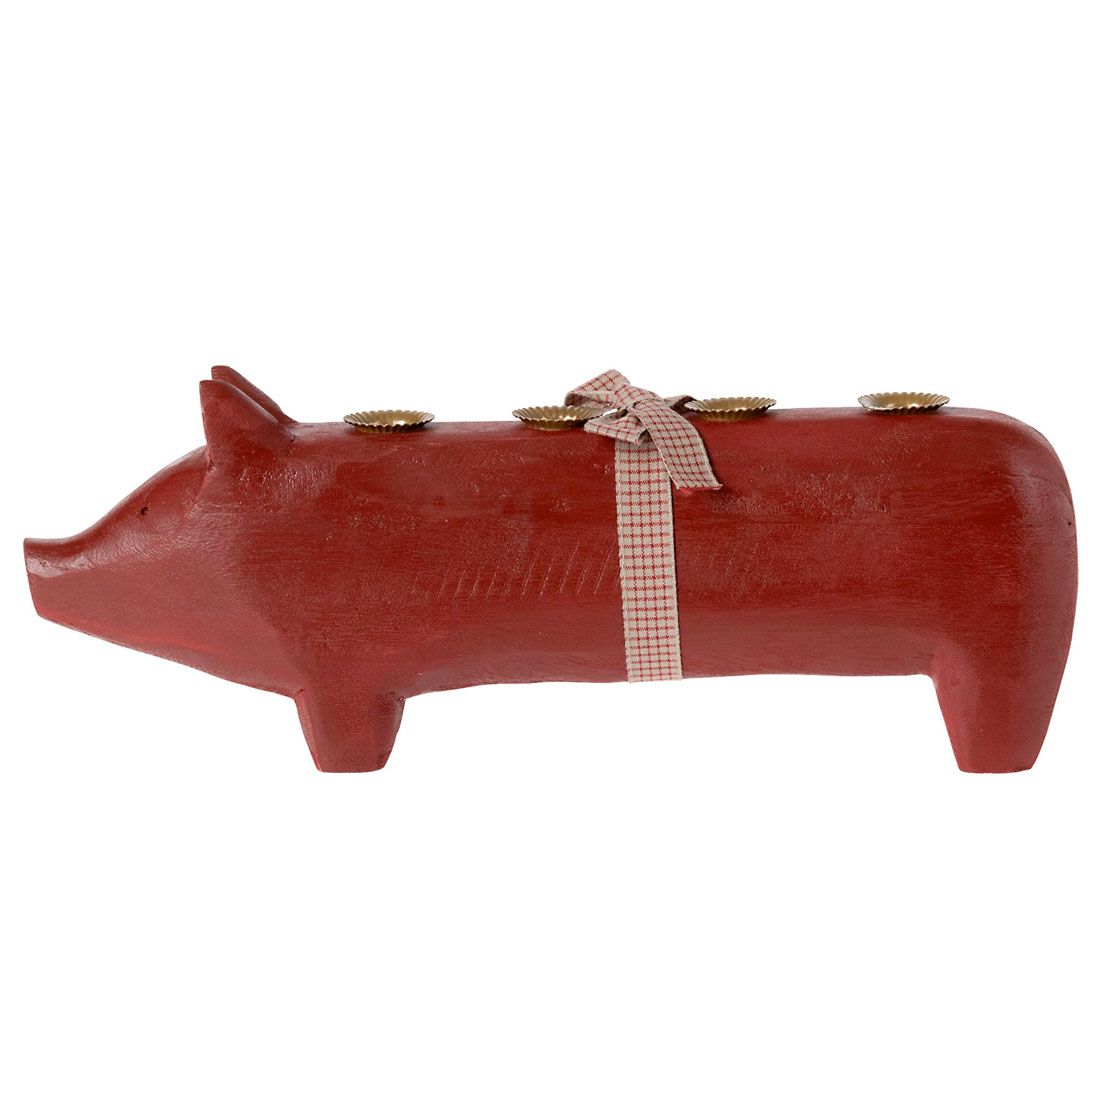 Maileg adventsstage i rød fra 2022. Rød gris med 4 bronze stearinlys holdere på ryggen.